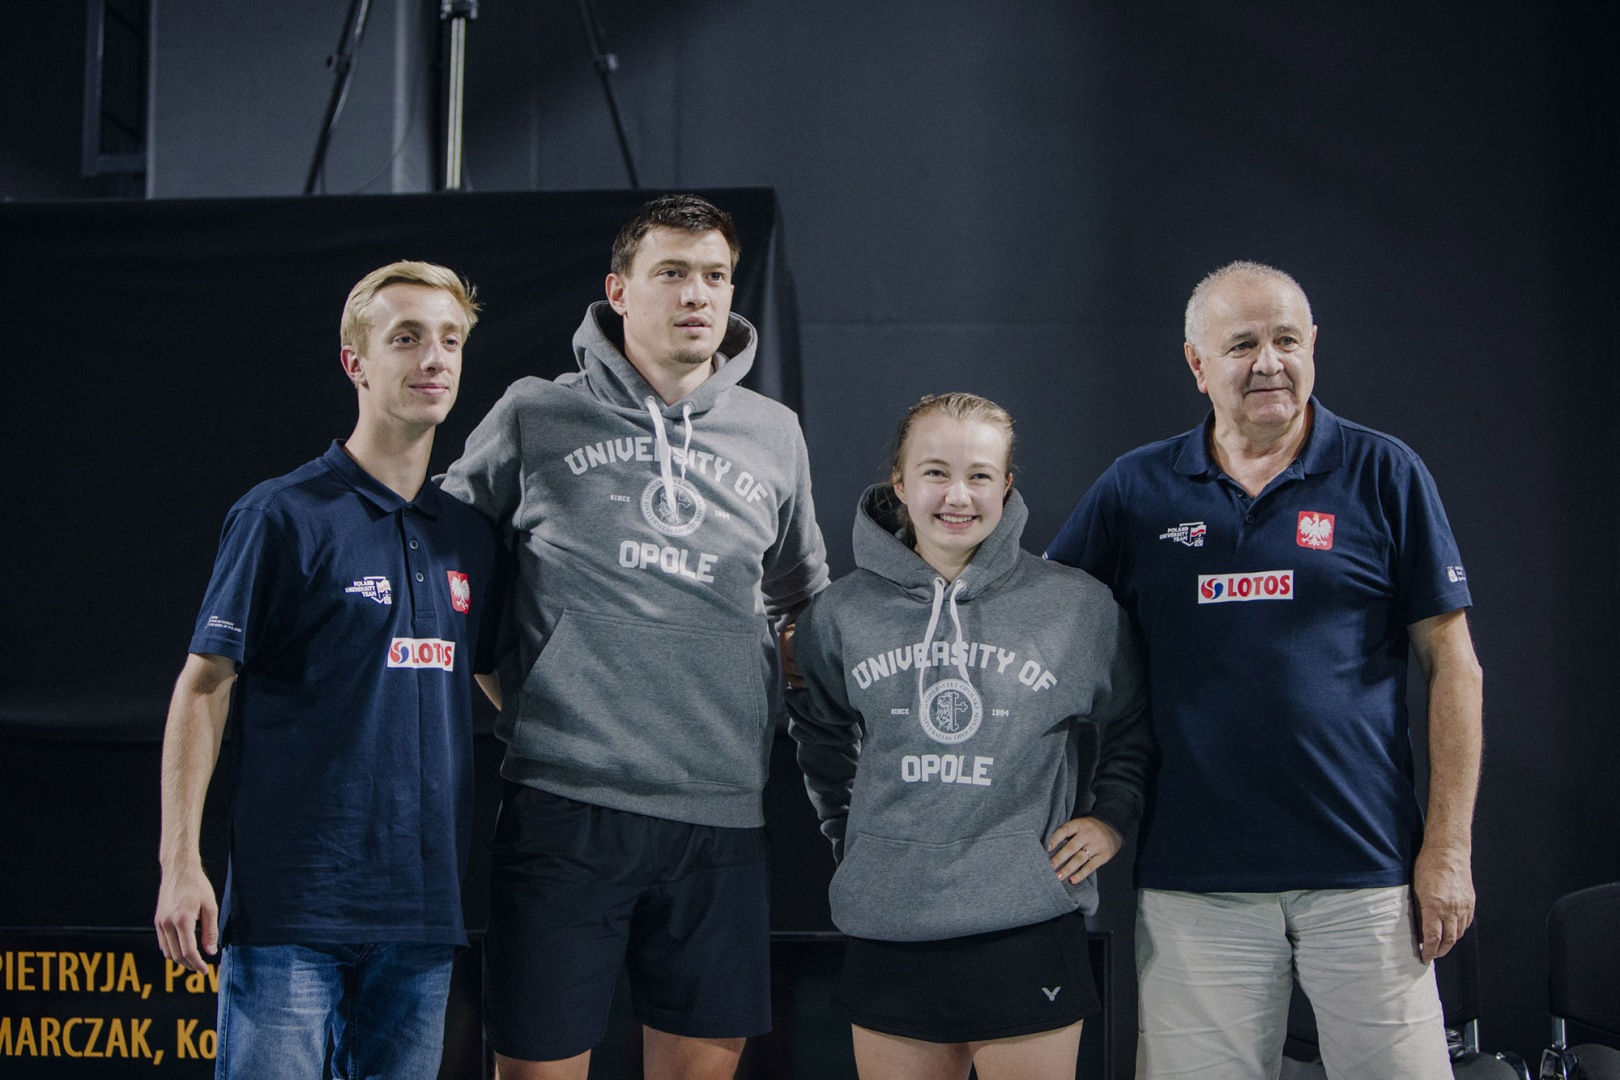 Paweł Pietryja i Kornelia Marczak, badmintoniści UO, reprezentowali Polskę na Akademickich Mistrzostwach Europy w Łodzi. Zdobyli srebrny medal w grze mieszanej